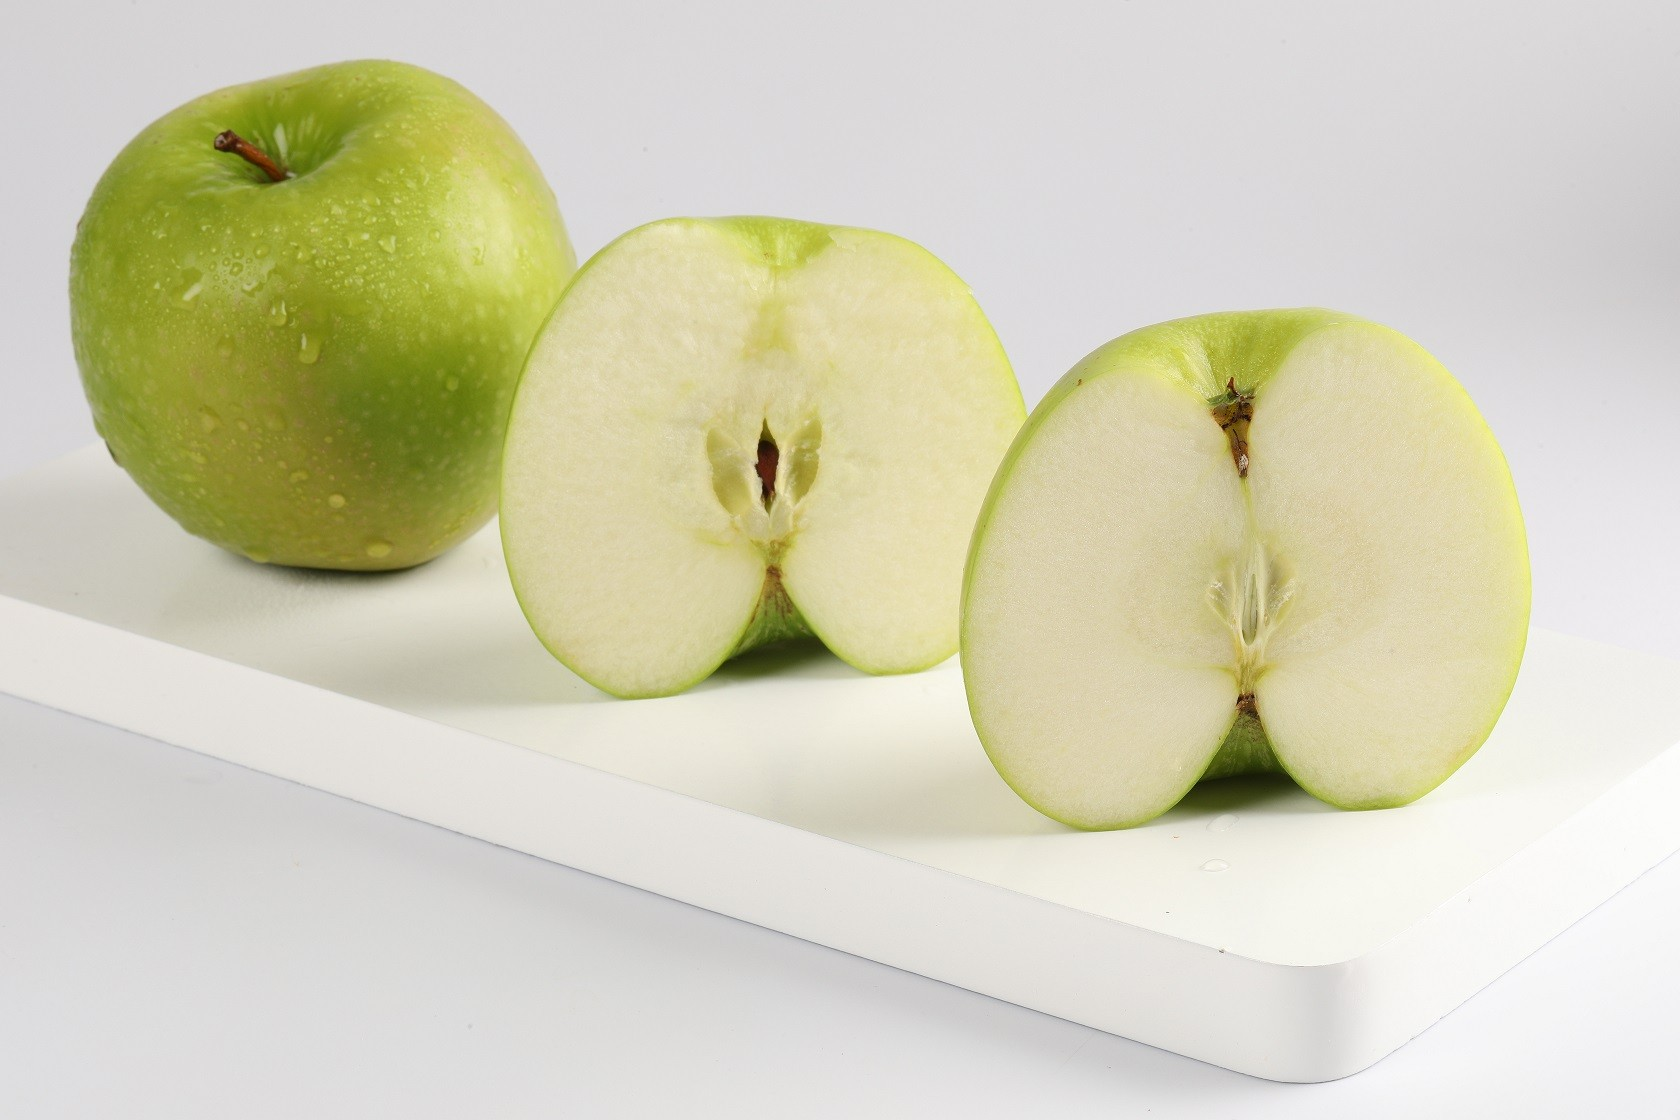 sử dụng táo xanh mà không đi kèm với bất kì thực phẩm nào khác; cũng sẽ khiến lượng calo trong cơ thể bị biến mất.